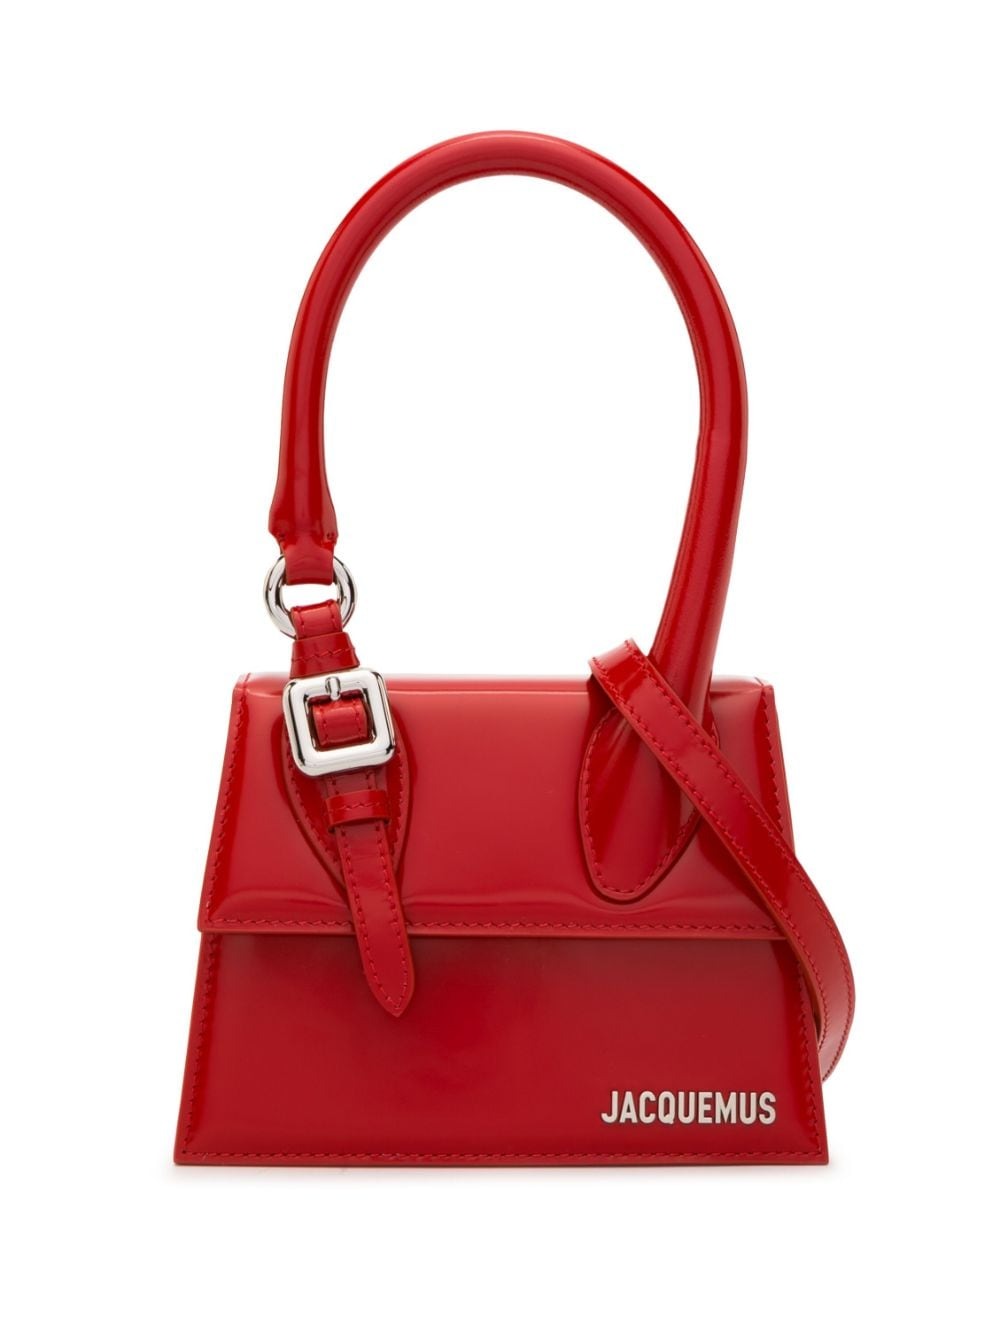 Jacquemus Le Chiquito Shoulder Bag